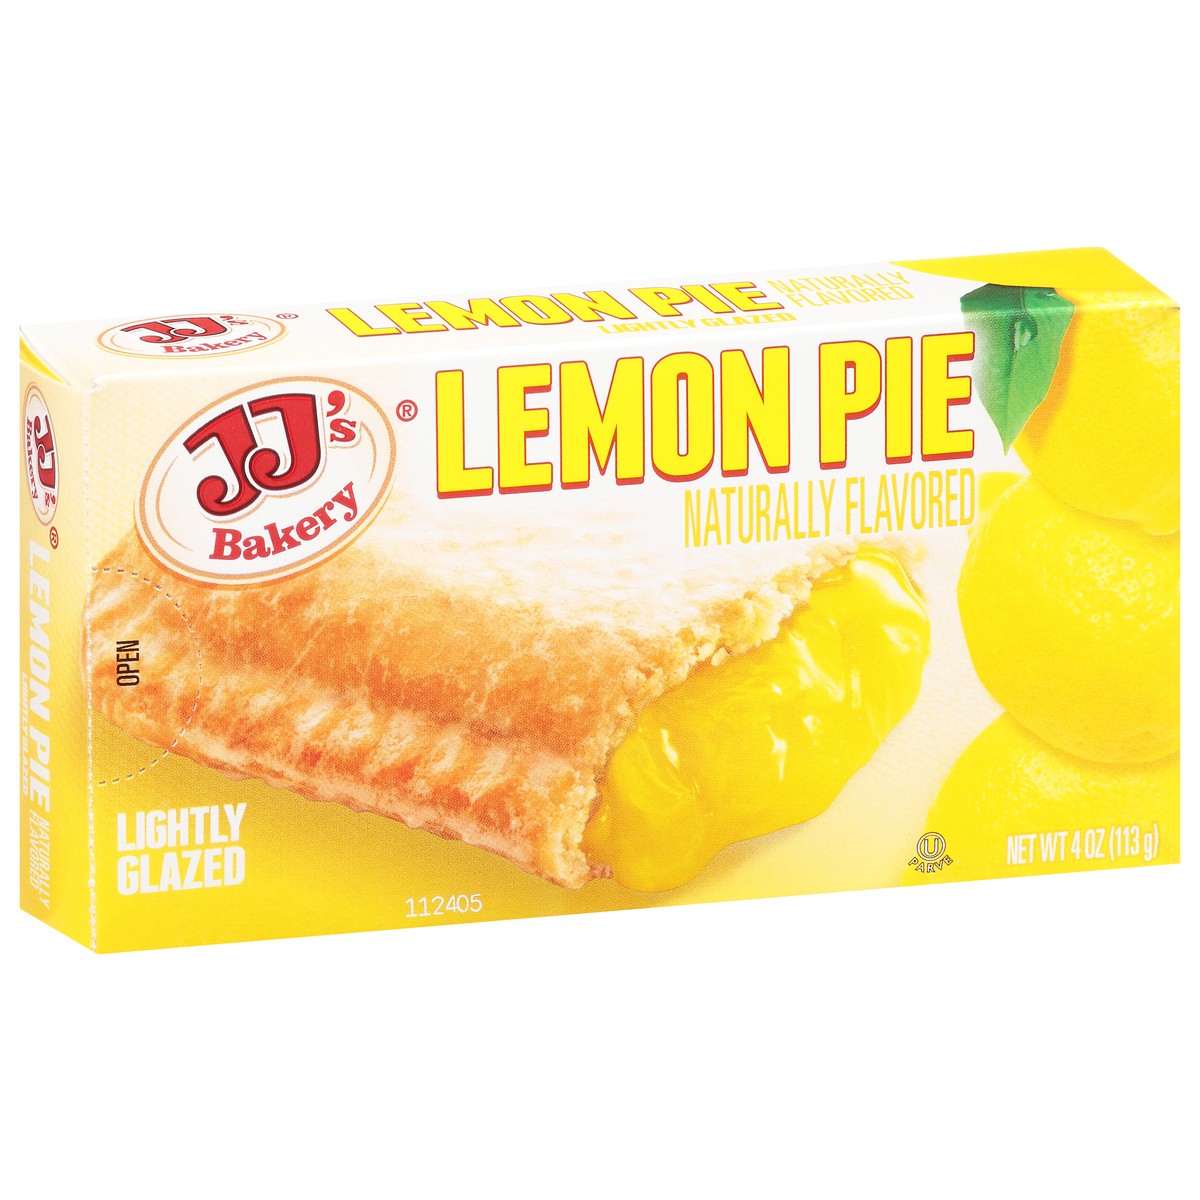 slide 13 of 13, JJ's Bakery Lightly Glazed Lemon Pie 4 oz, 4 oz